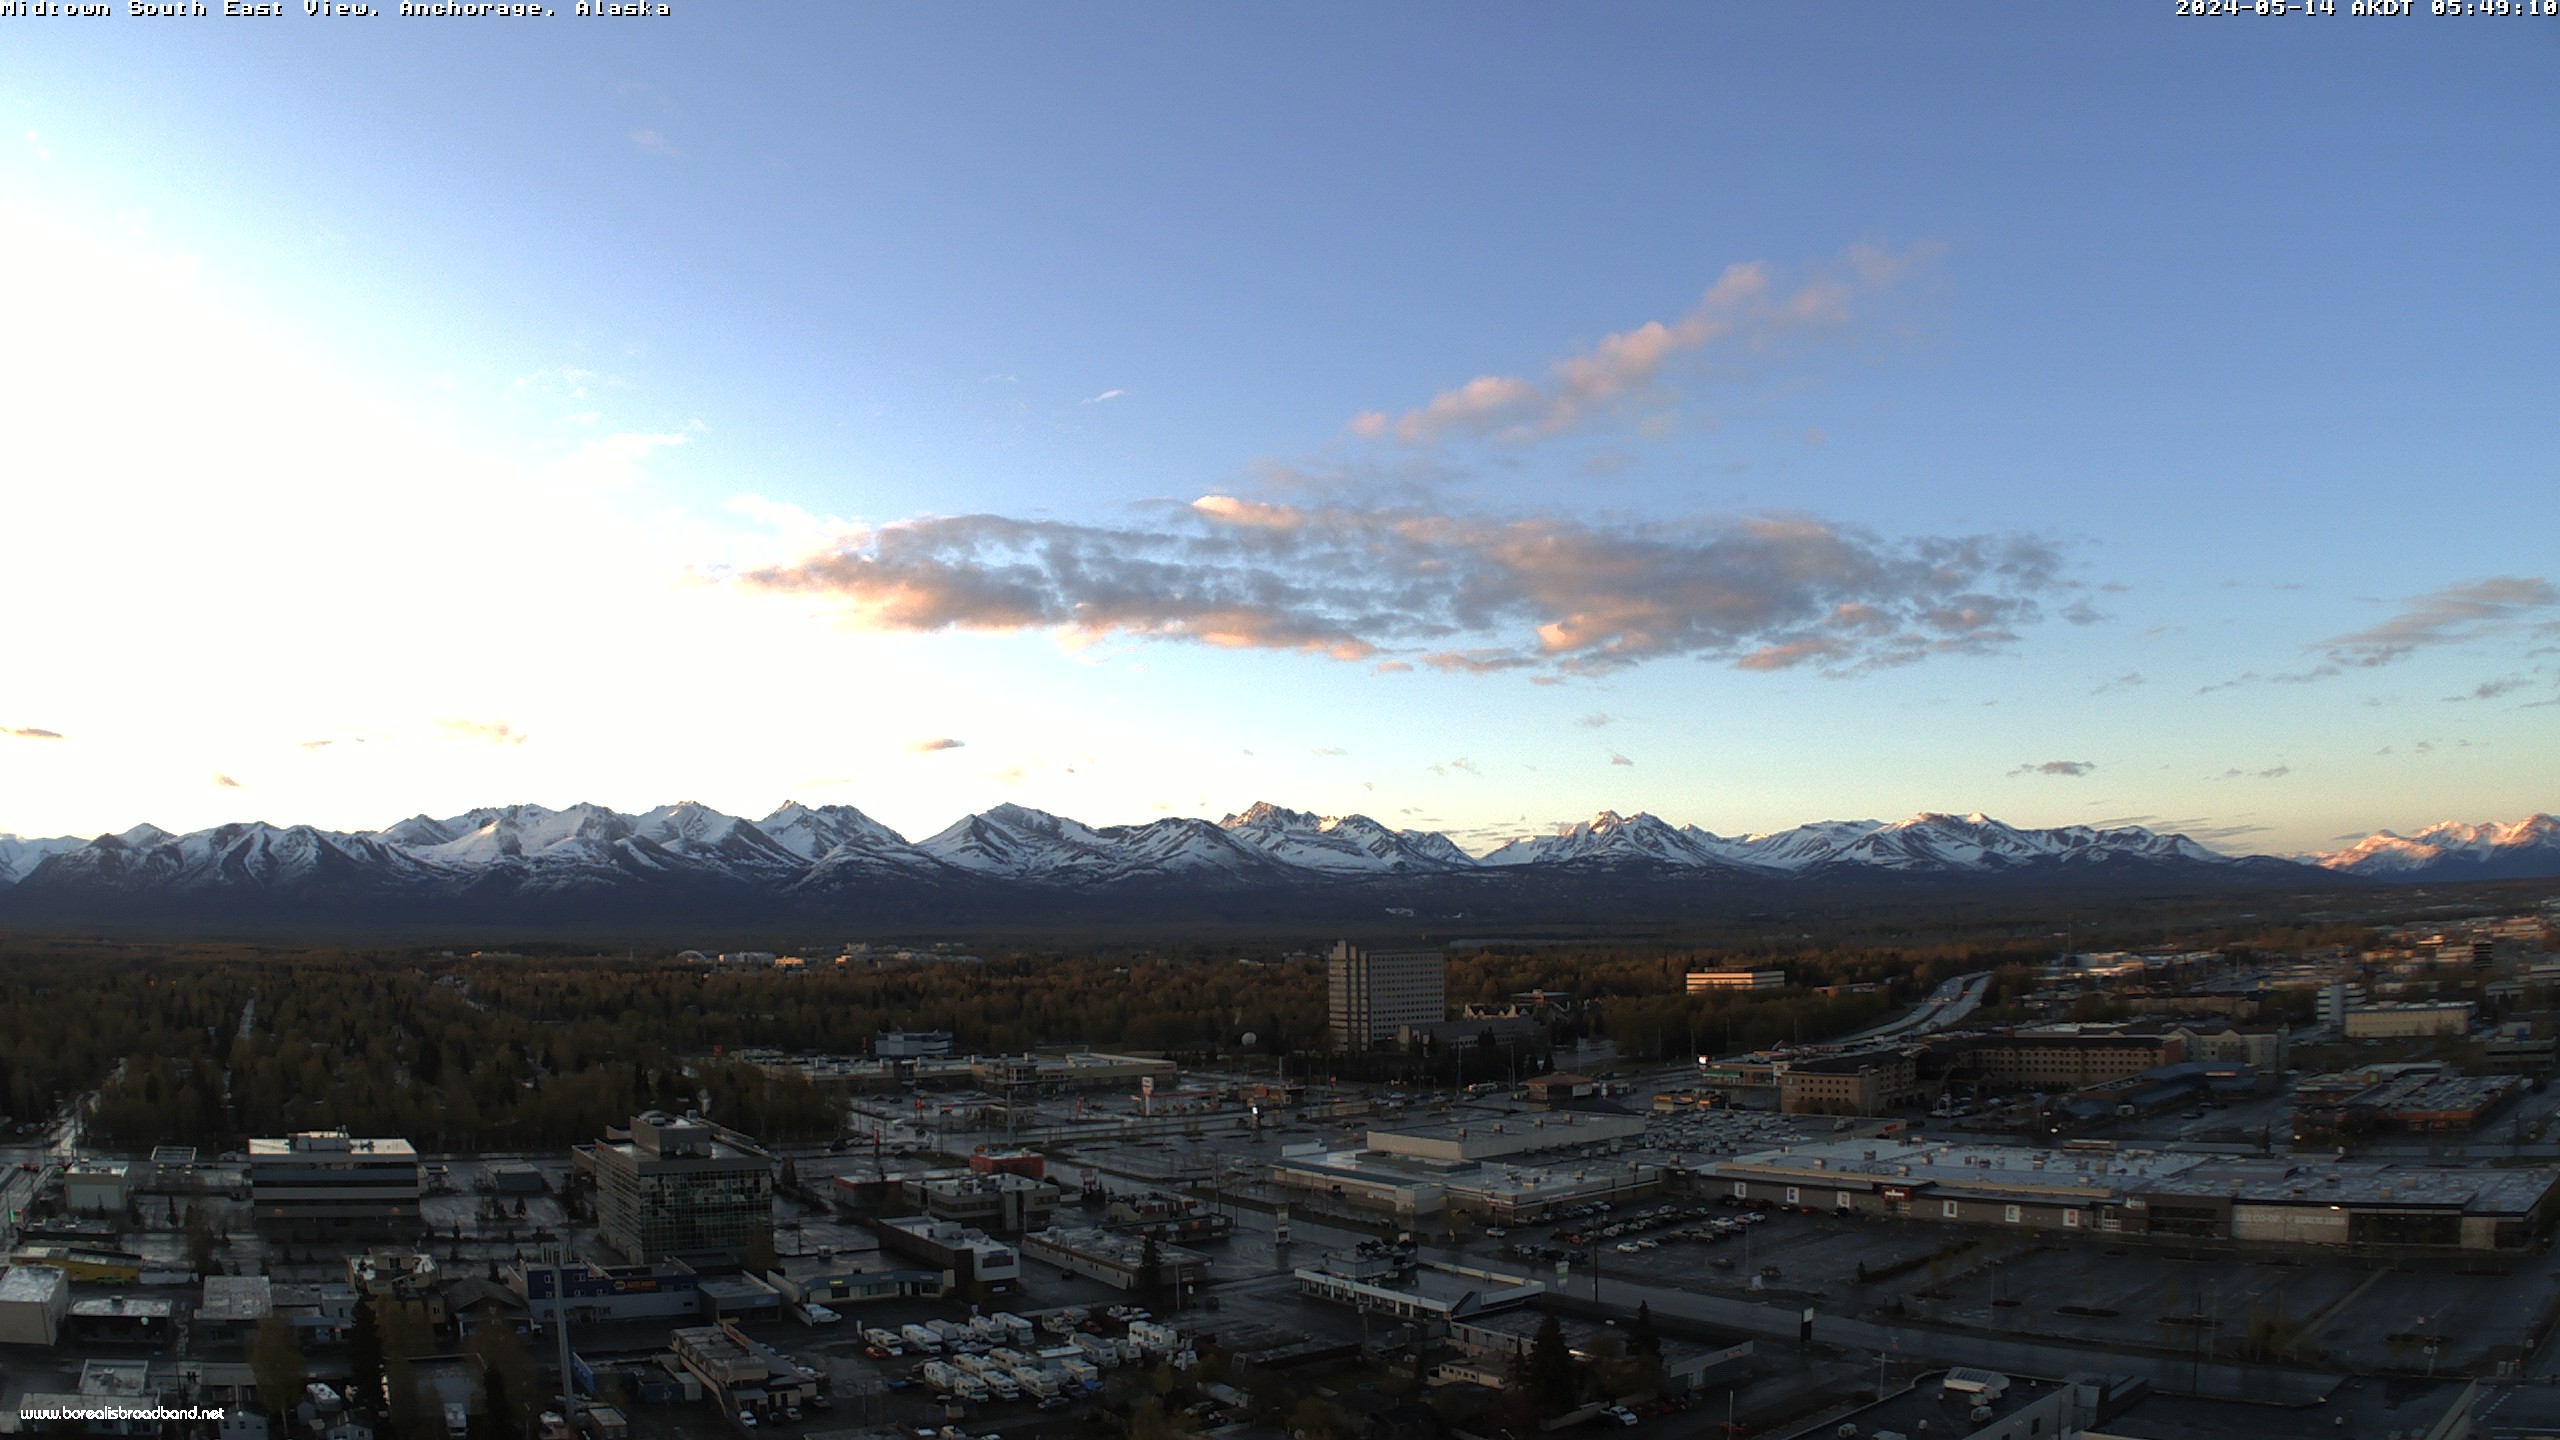 Anchorage, Alaska Vie. 05:49